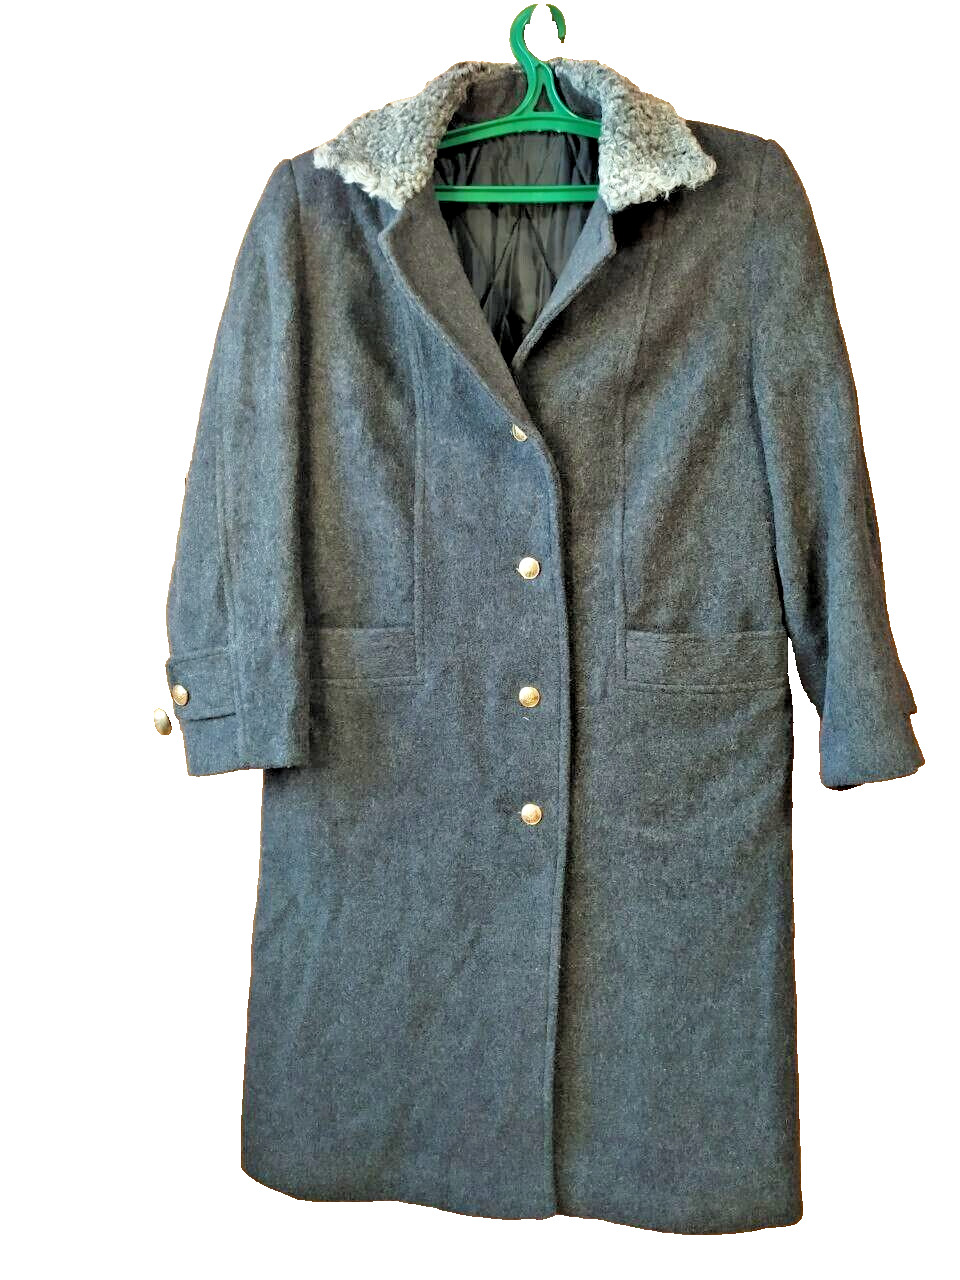 Vintage general's overcoat. New Ukraine.